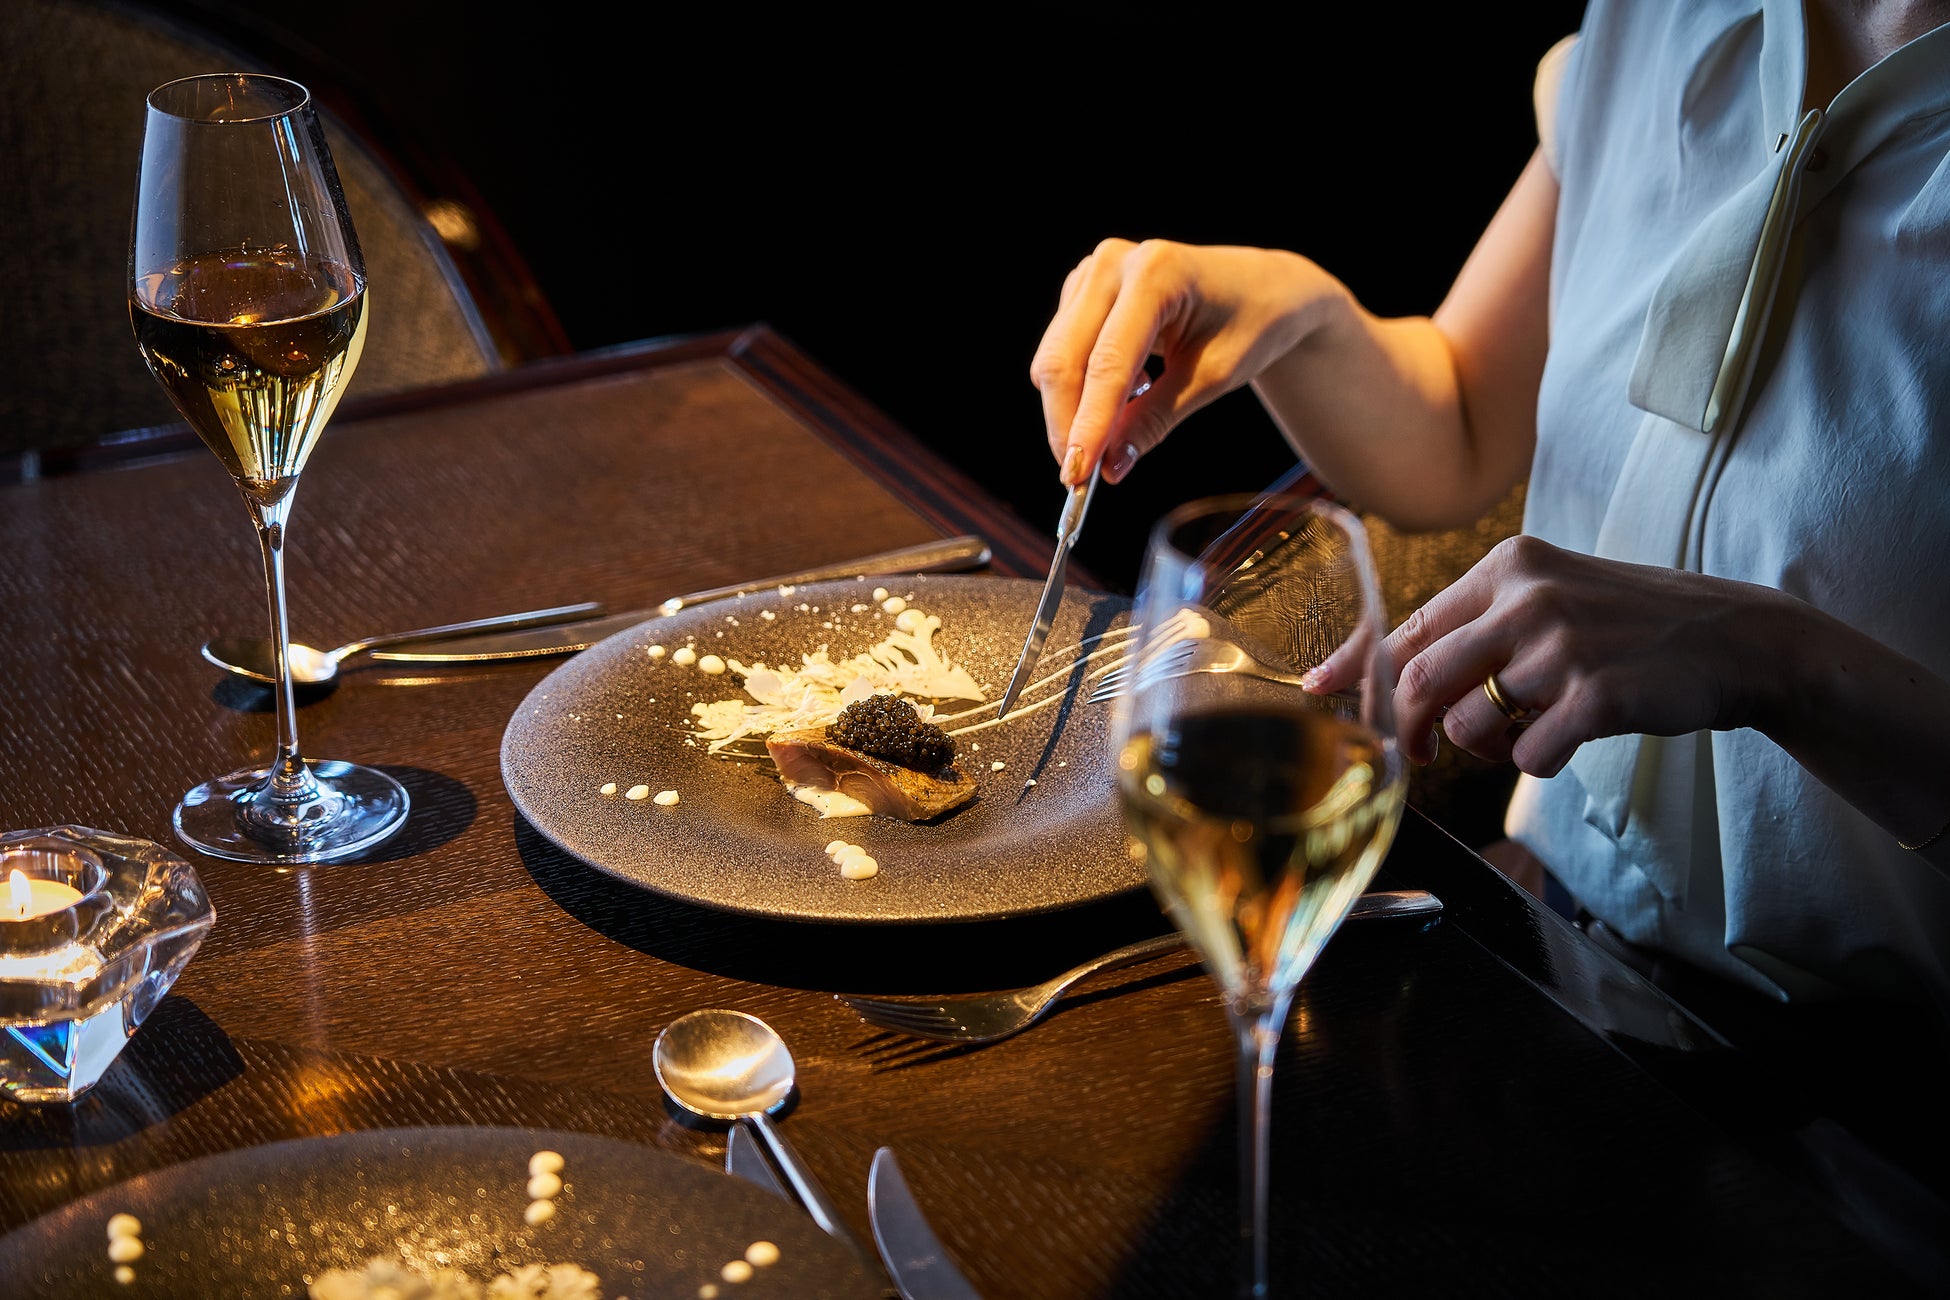 ホテル最上階のレストラン「DINING & BAR TABLE 9 TOKYO」にてご用意したディナーコース「Hommage à Yves Saint Laurent」